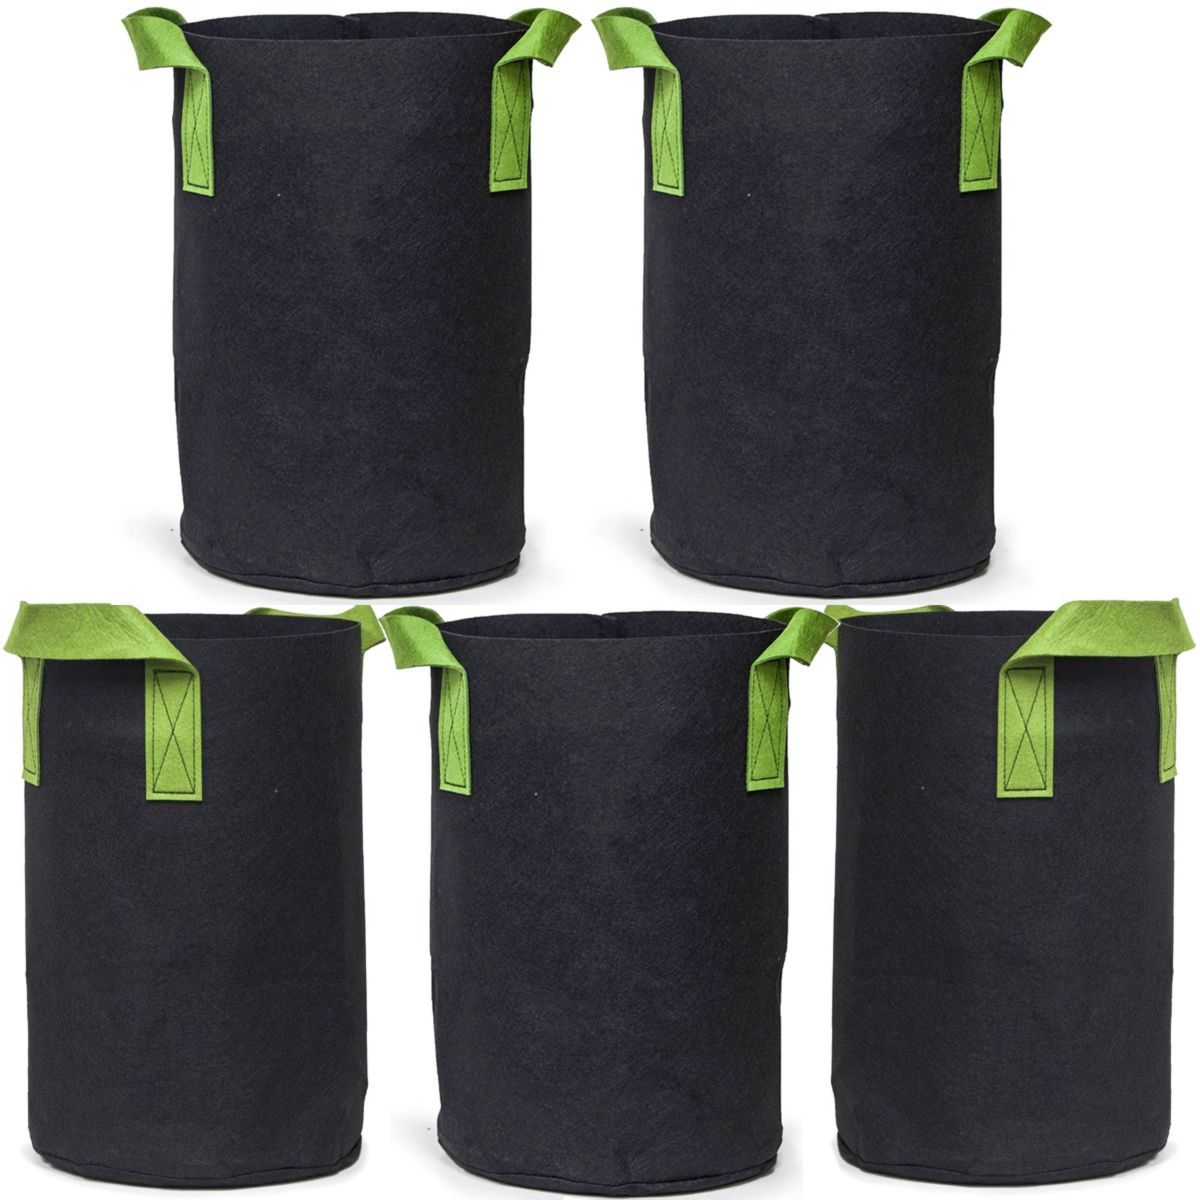 247Garden 10-Gallon Potato Grow Bags/Aeration Fabric Pots for Sale